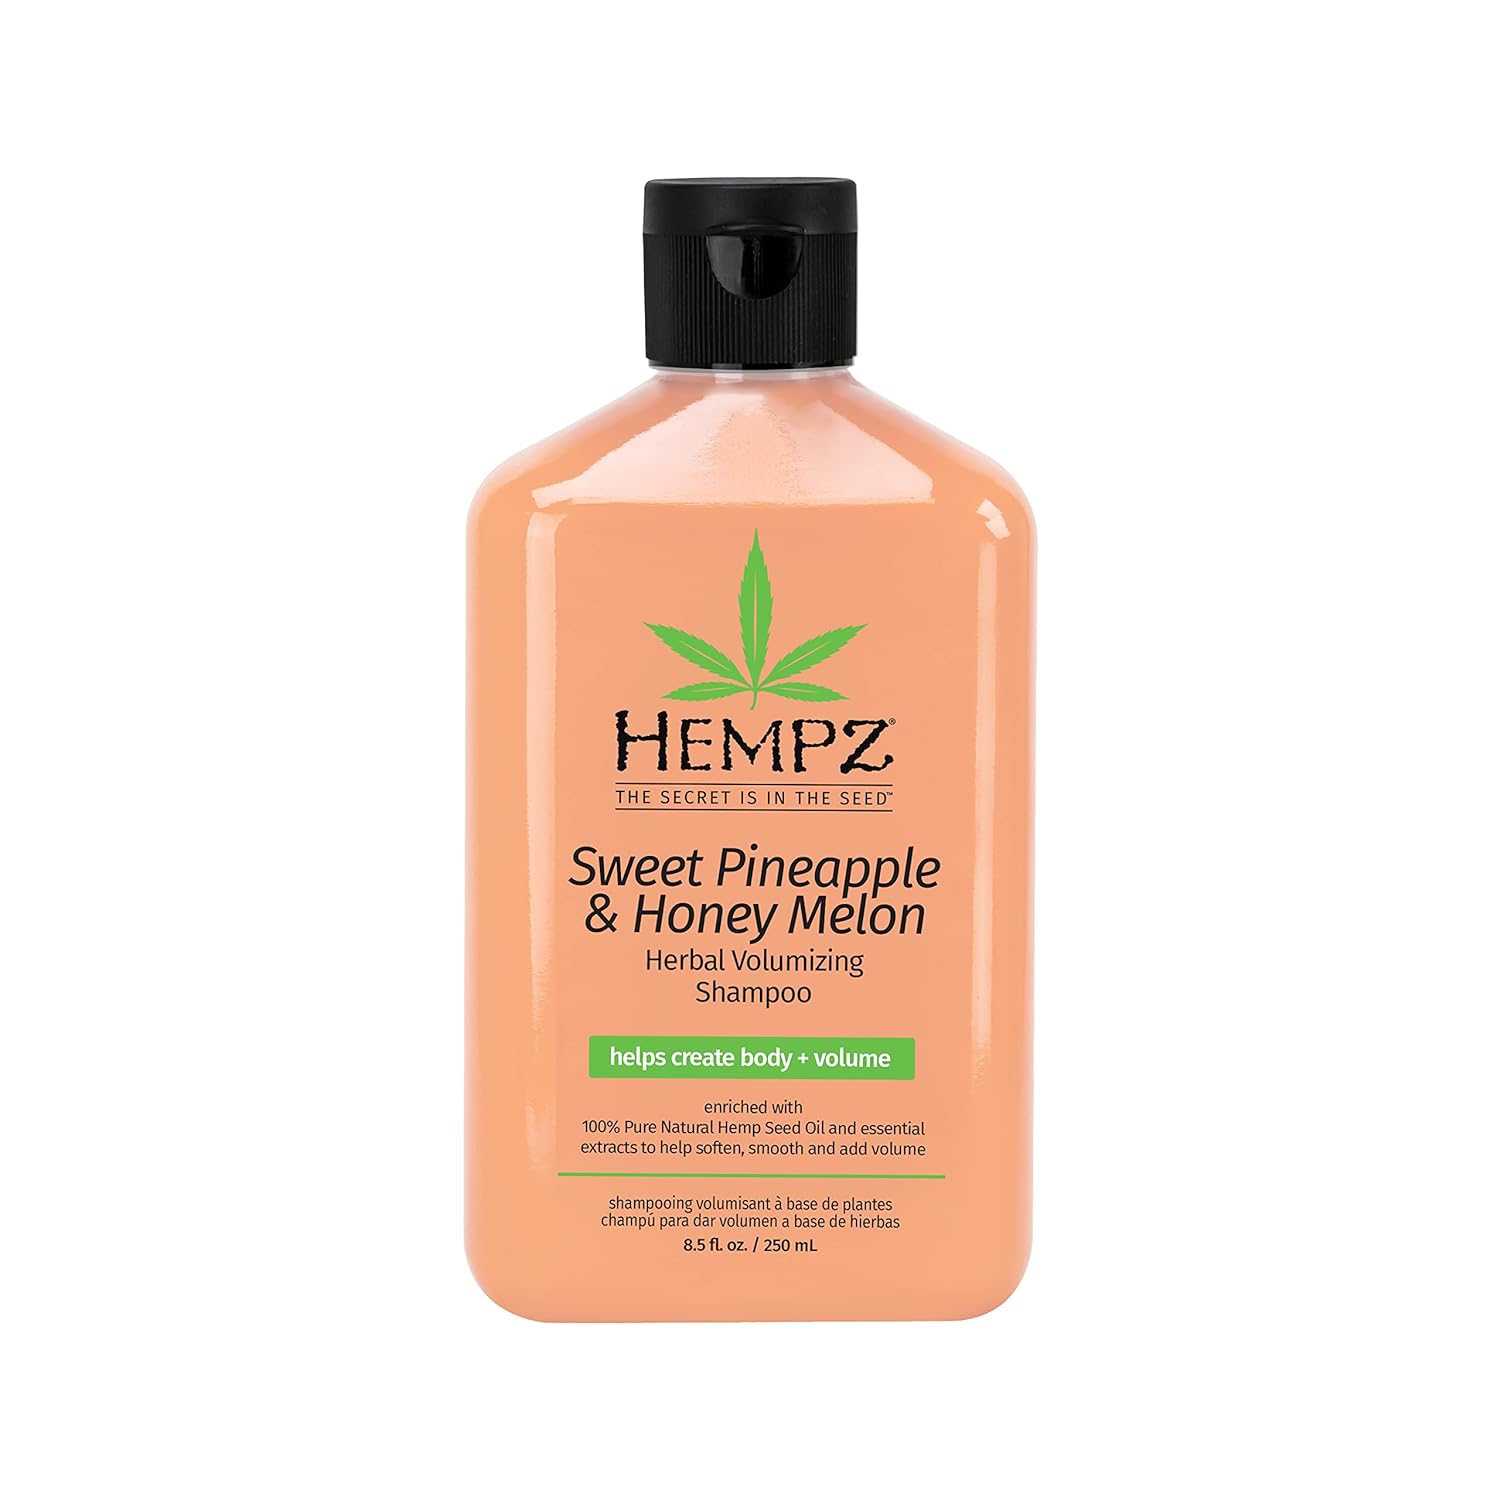 Hempz Sweet Pineapple & Honey Melon Herbal Shampoo, 8.5